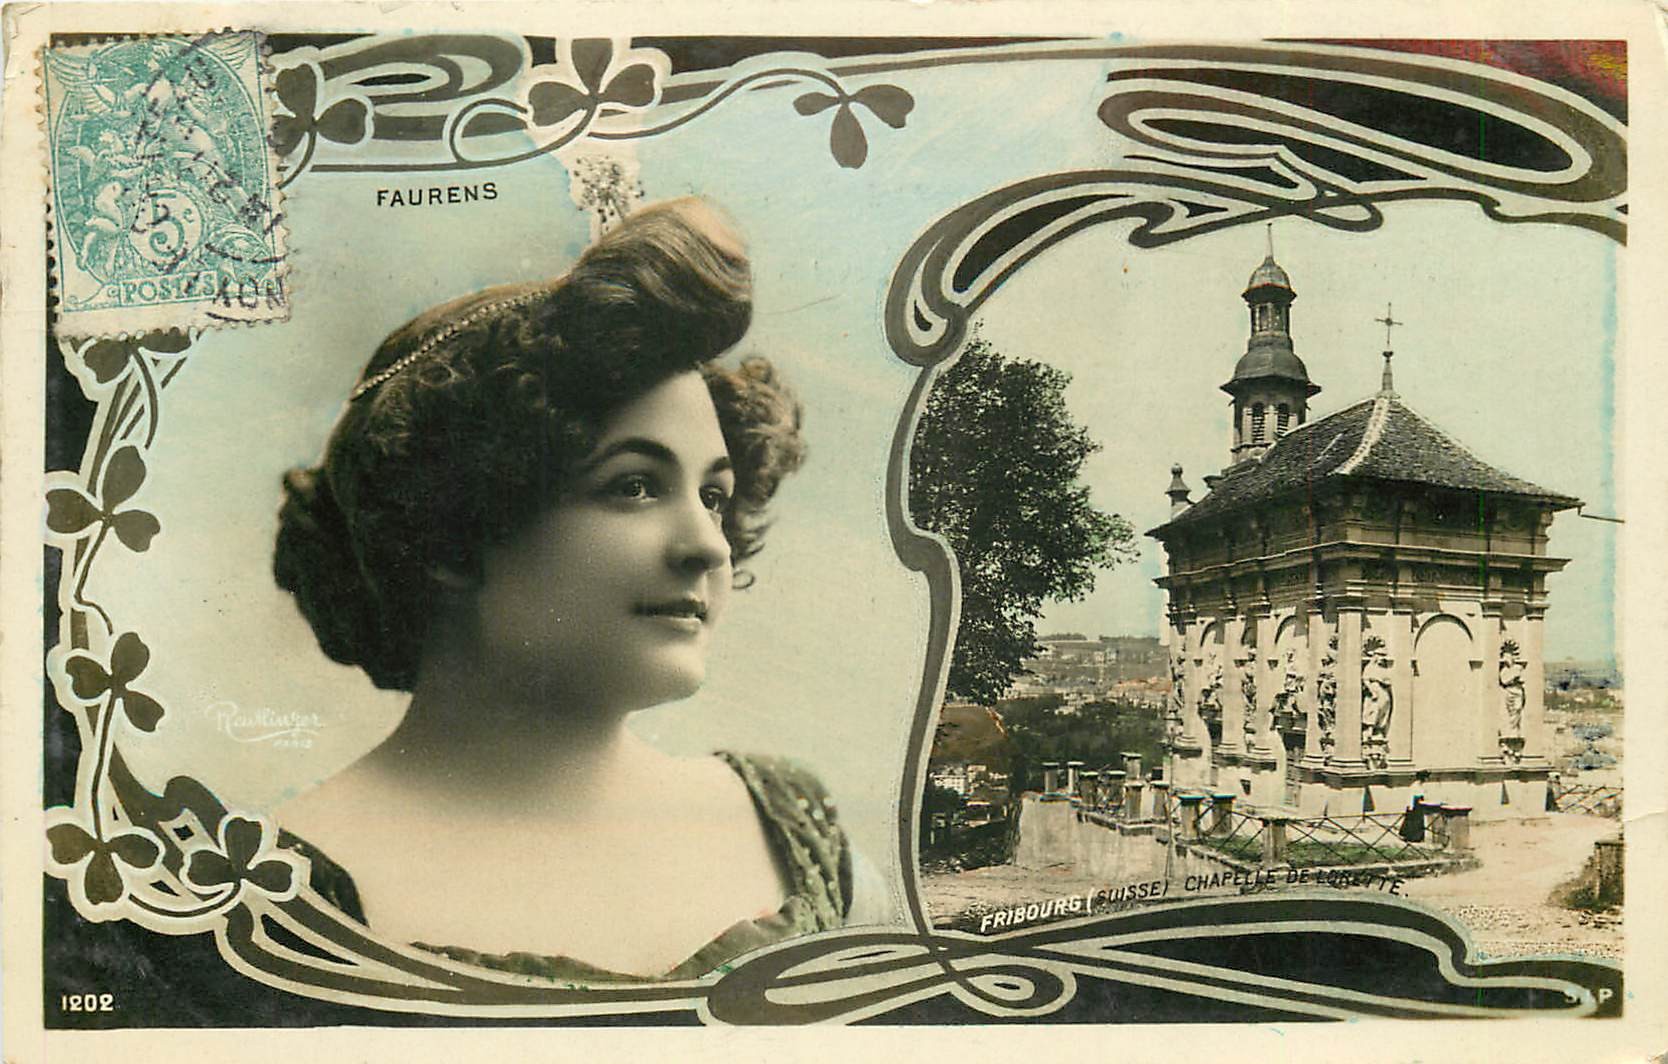 ARTISTES. Par REUTLINGER Melle Faurens de Fribourg 1904